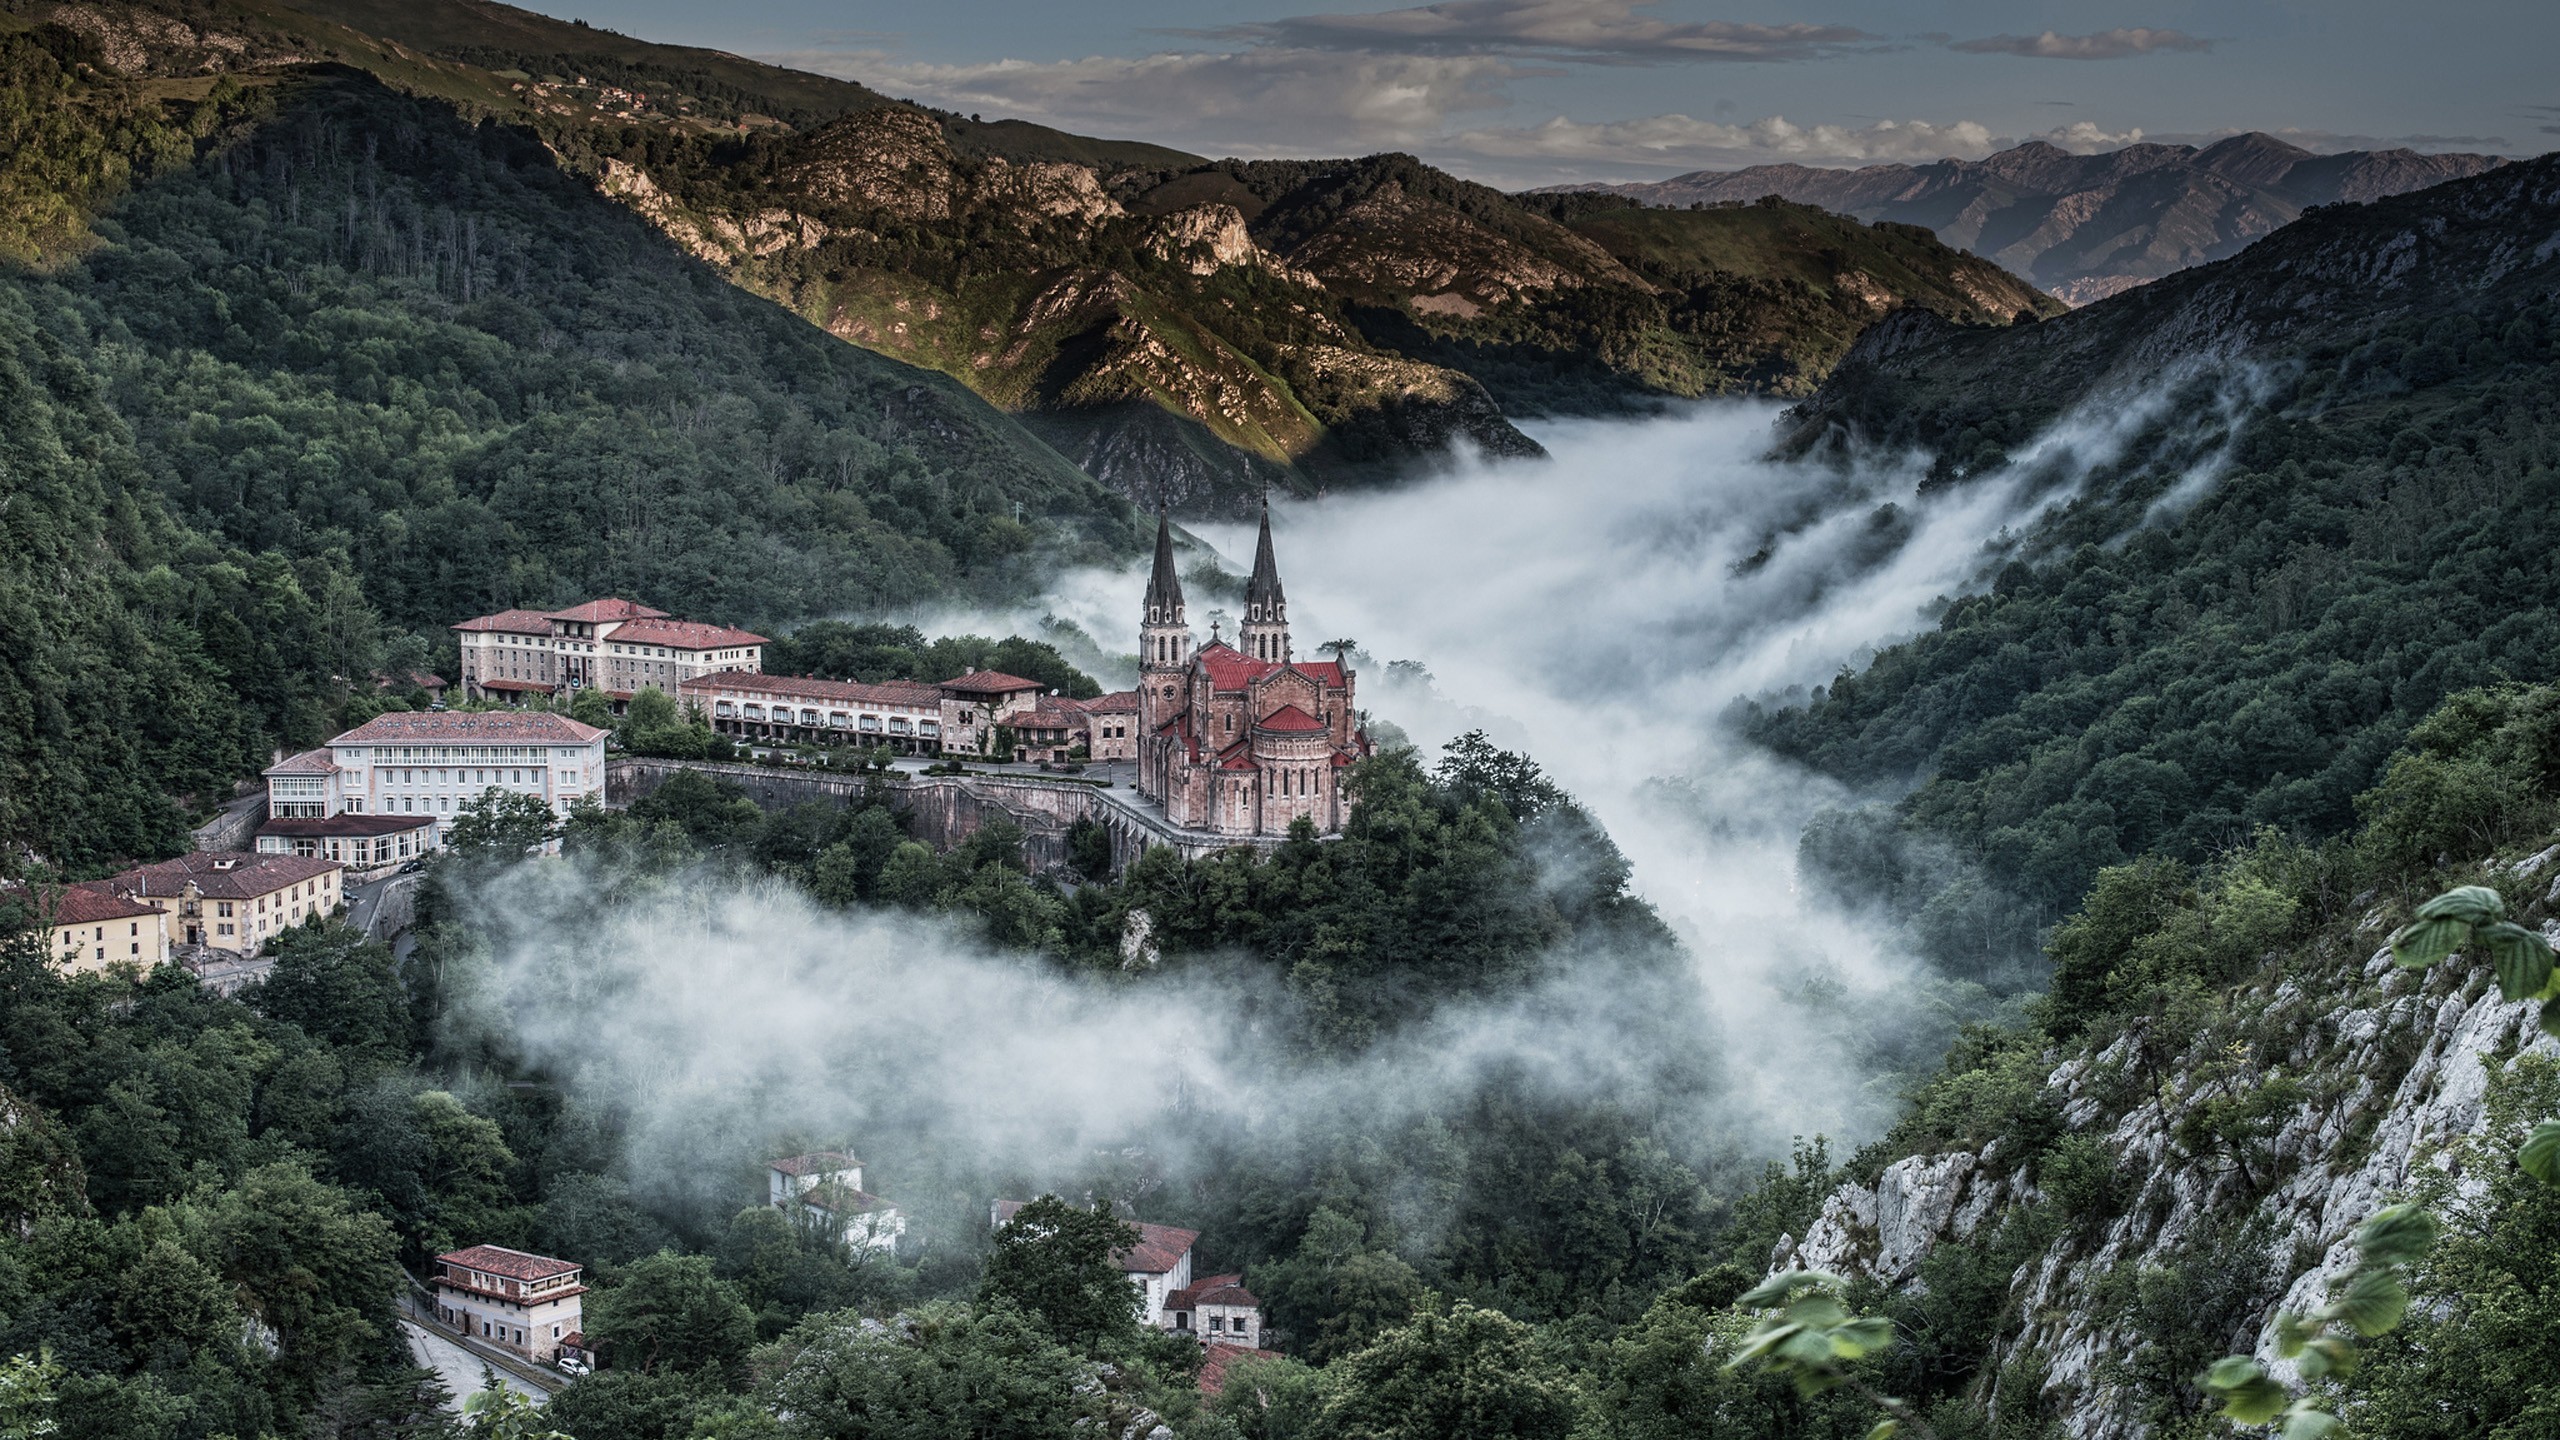 General 2560x1440 castle mountains landscape mist Spain Asturias Santuario de Covadonga Picos de Europa